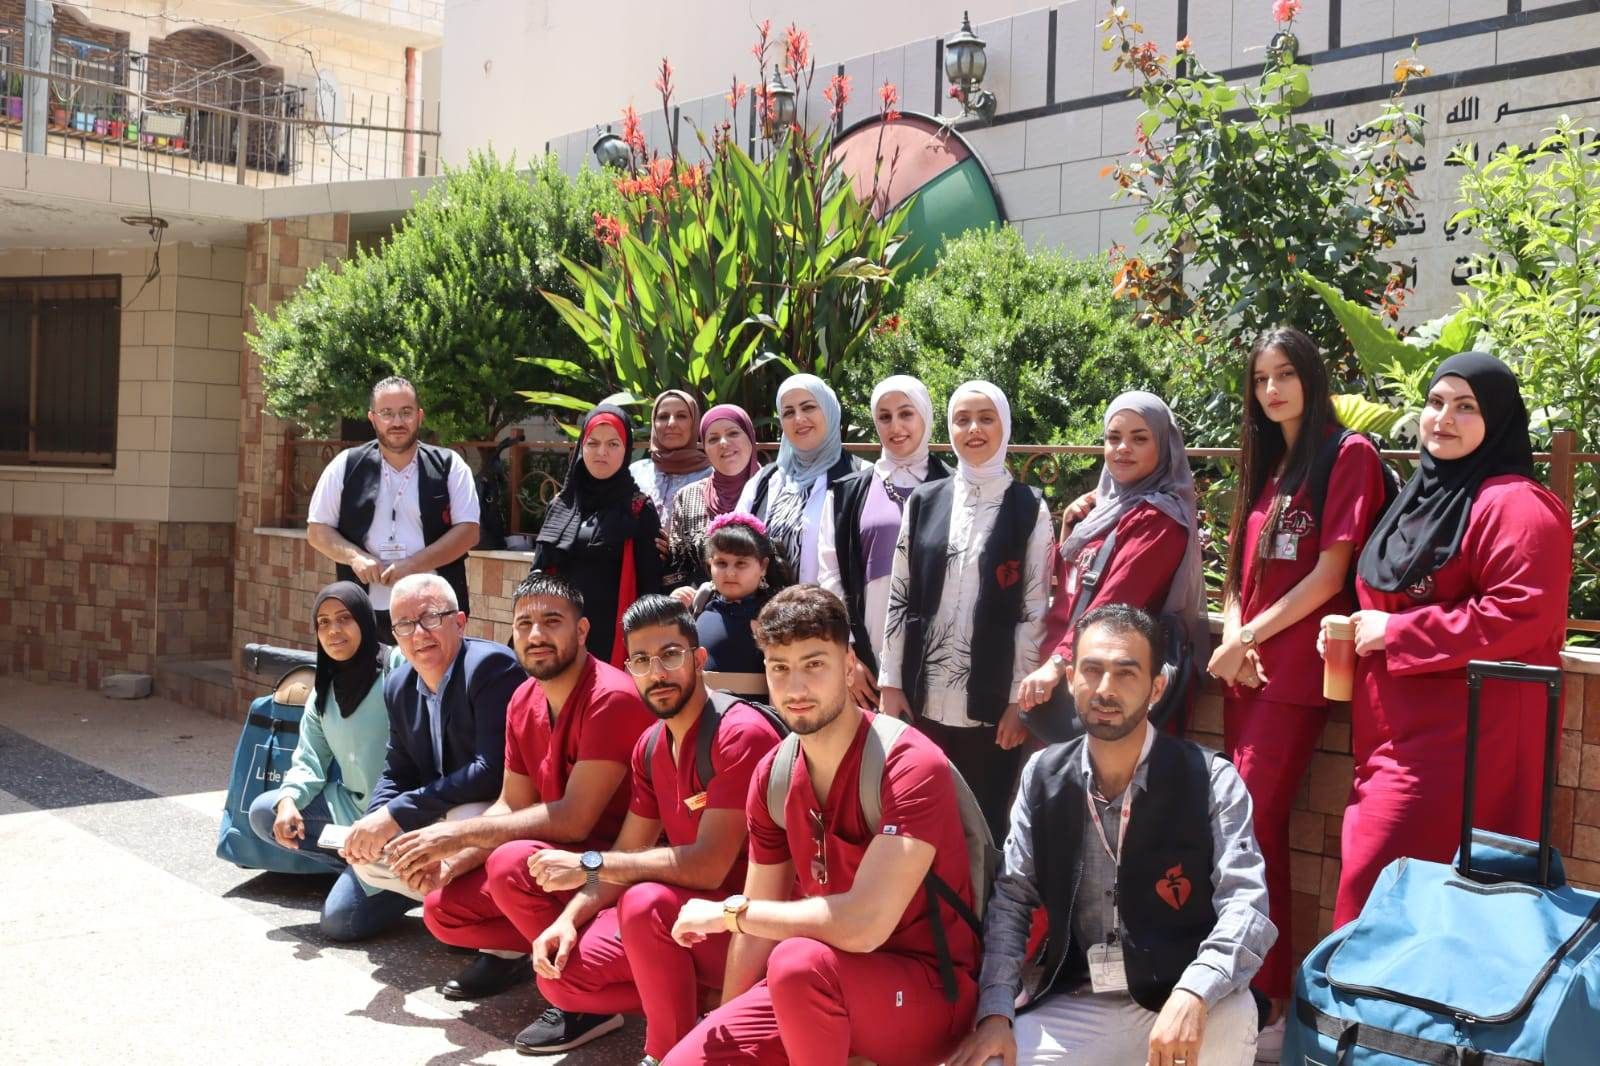 جمعية عسكر للتنمية والتطوير المجتمعي الخيرية تنظم دورة تدريبية بالشراكة مع مركز القلب التابع للجامعة العربية الأمريكية